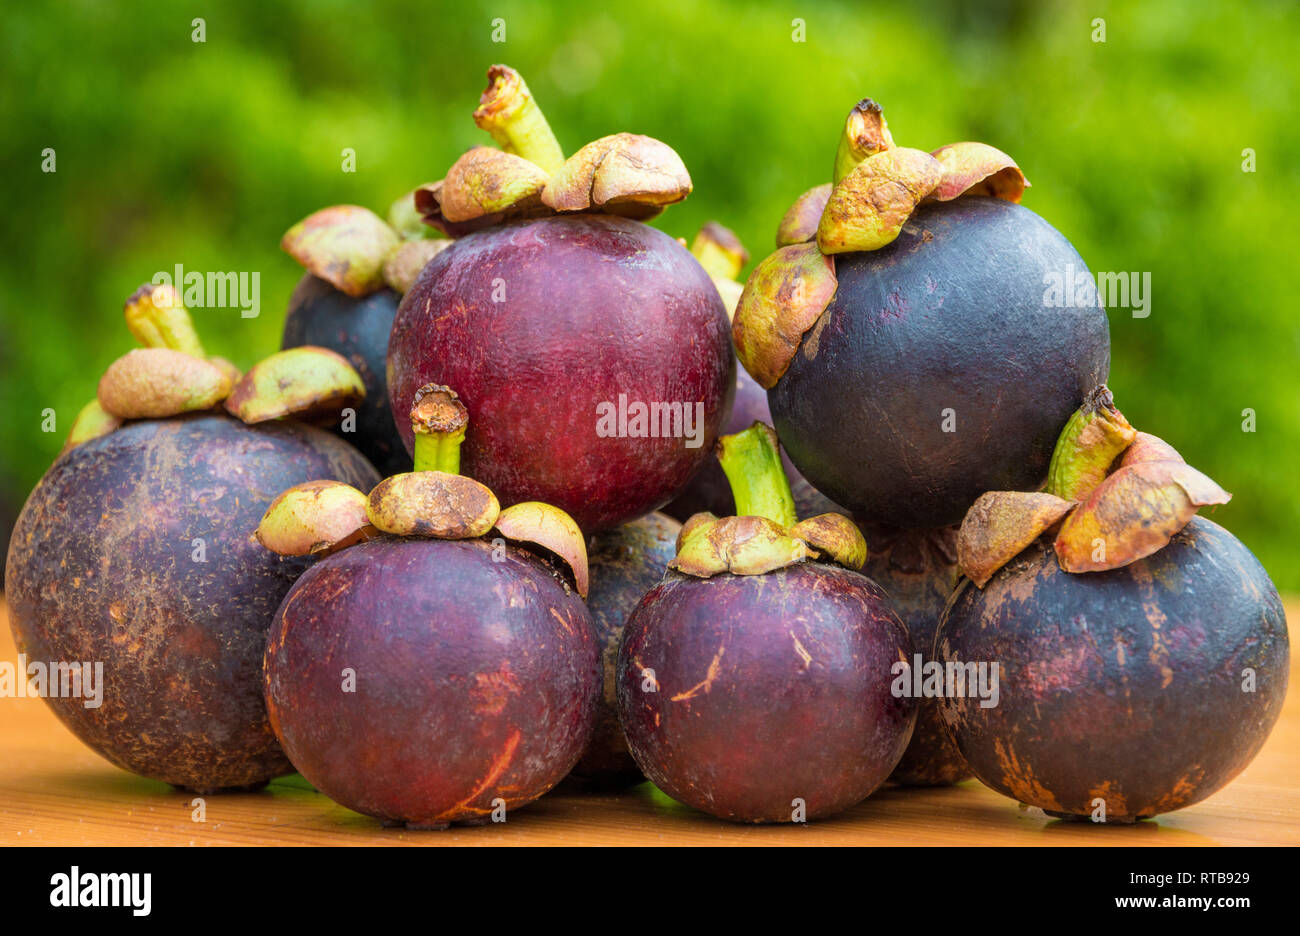 Belle photo de plusieurs mangoustan (Garcinia mangostana) fruits, empilées les unes sur les autres sur une table en bois. Les fruits avec leur couleur rouge-violet... Banque D'Images